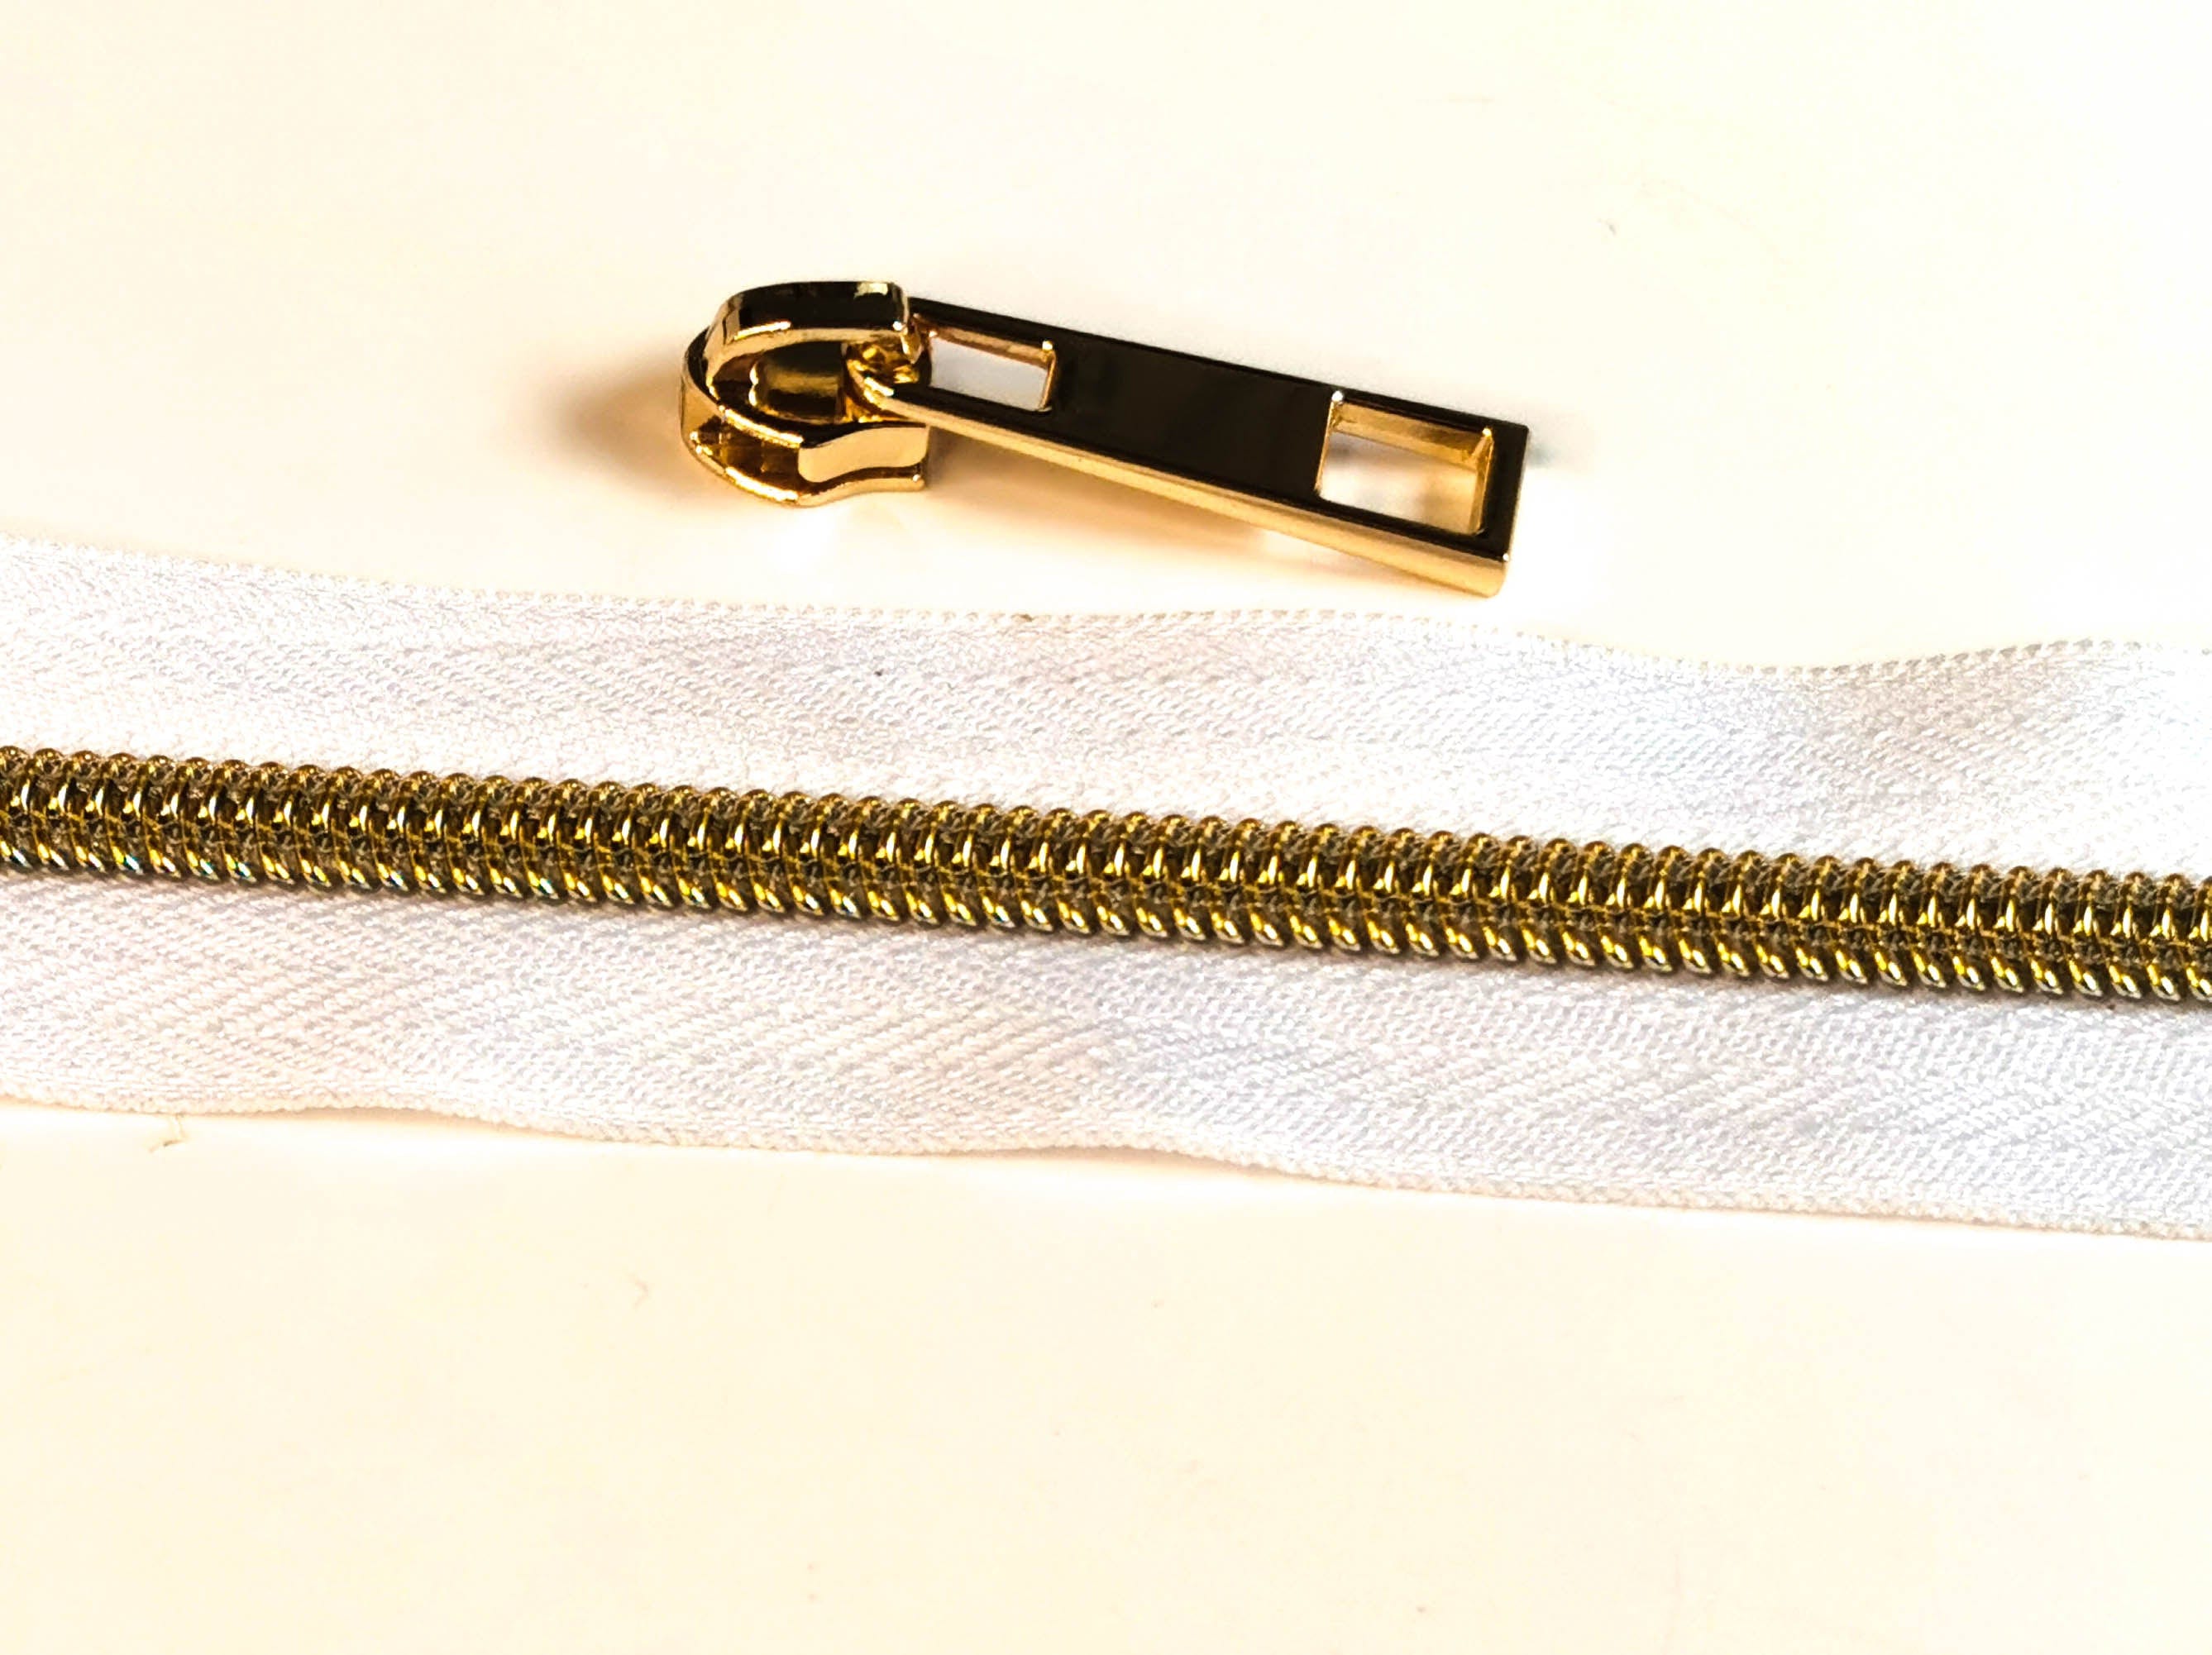 Zipper by the Yard (metre). 2.5m of #5 Zipper tape with 8 Zipper Sliders/Pullers By Kiwi Bagineers - Kiwi Bagineers